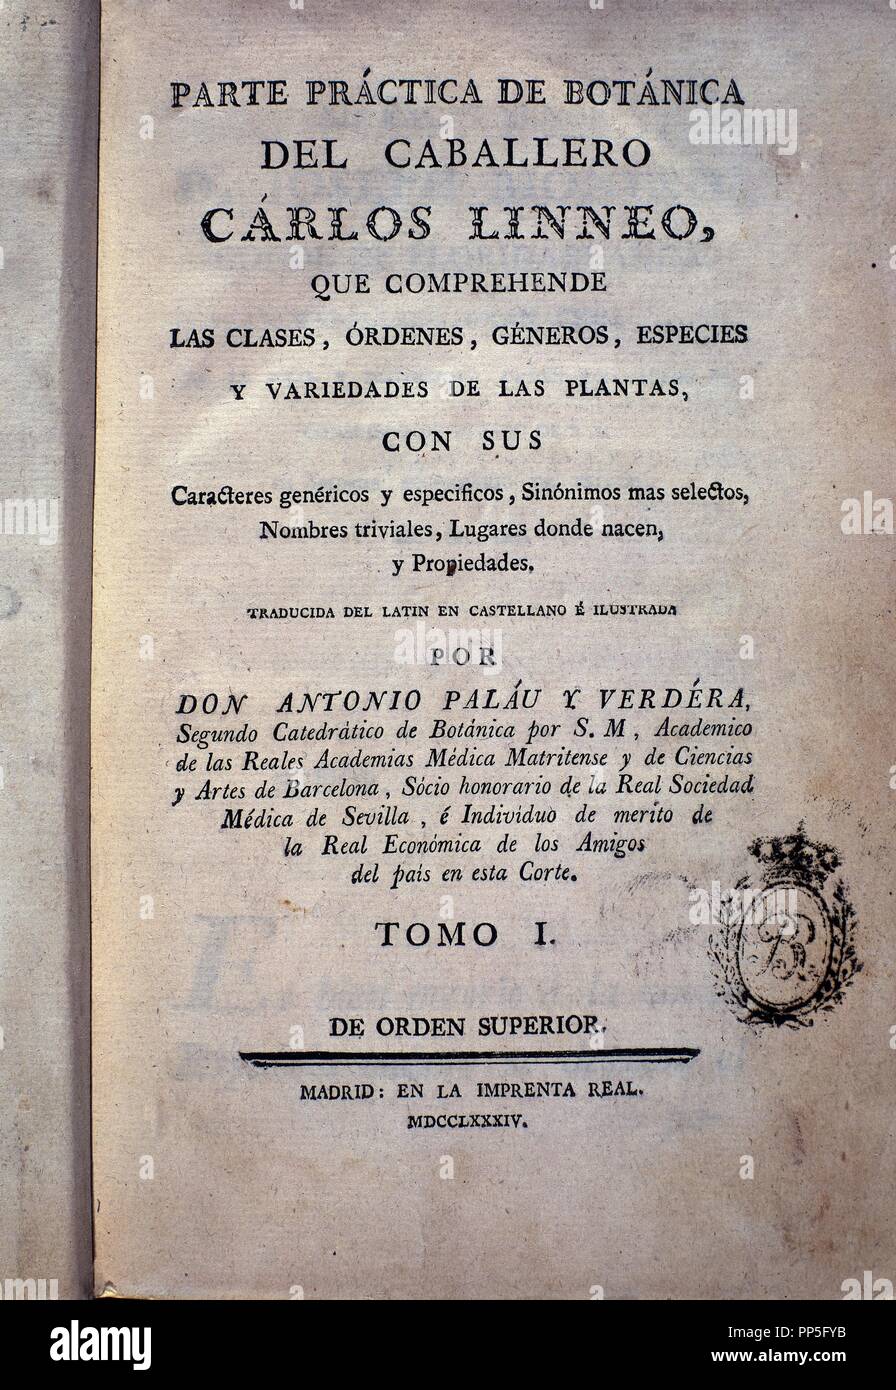 Libro botánico- 1784. Autor: Carlos Linneo. Ubicación: BIBLIOTECA NACIONAL DE COLECCION. MADRID. España. Foto de stock